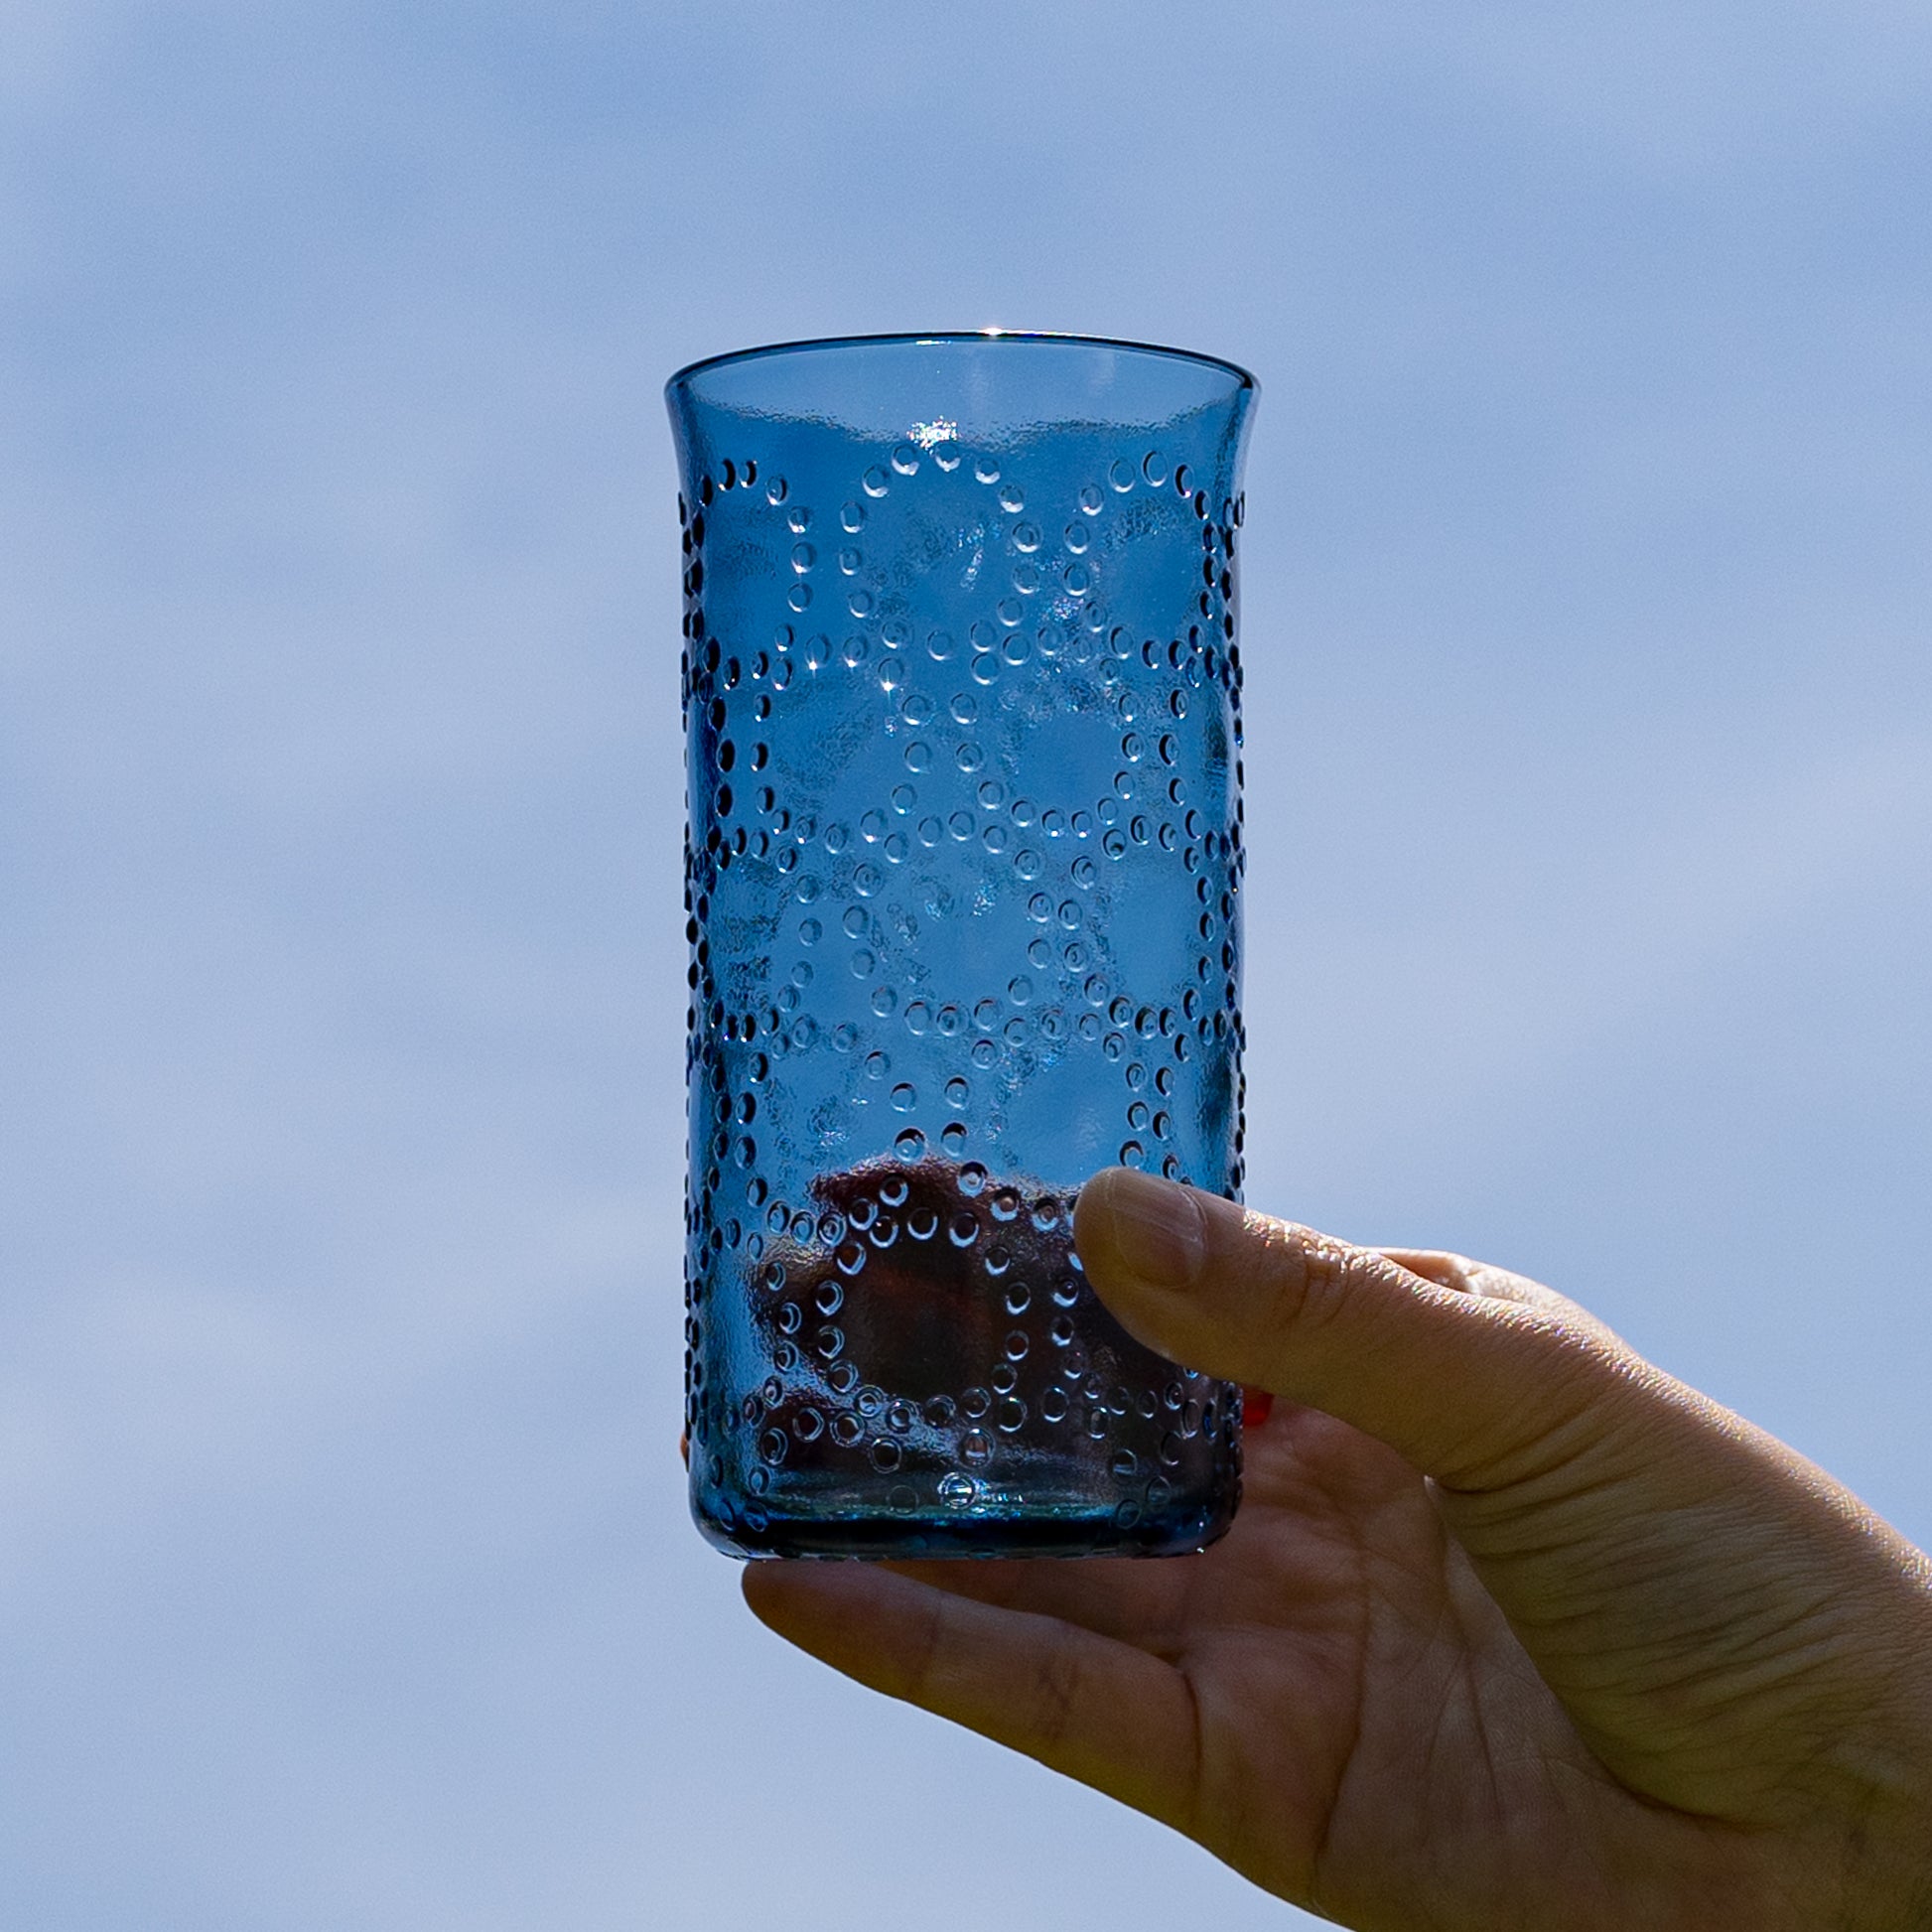 透き通る青と点のデザインが美しい平井睦美さんのTENNストレートグラス